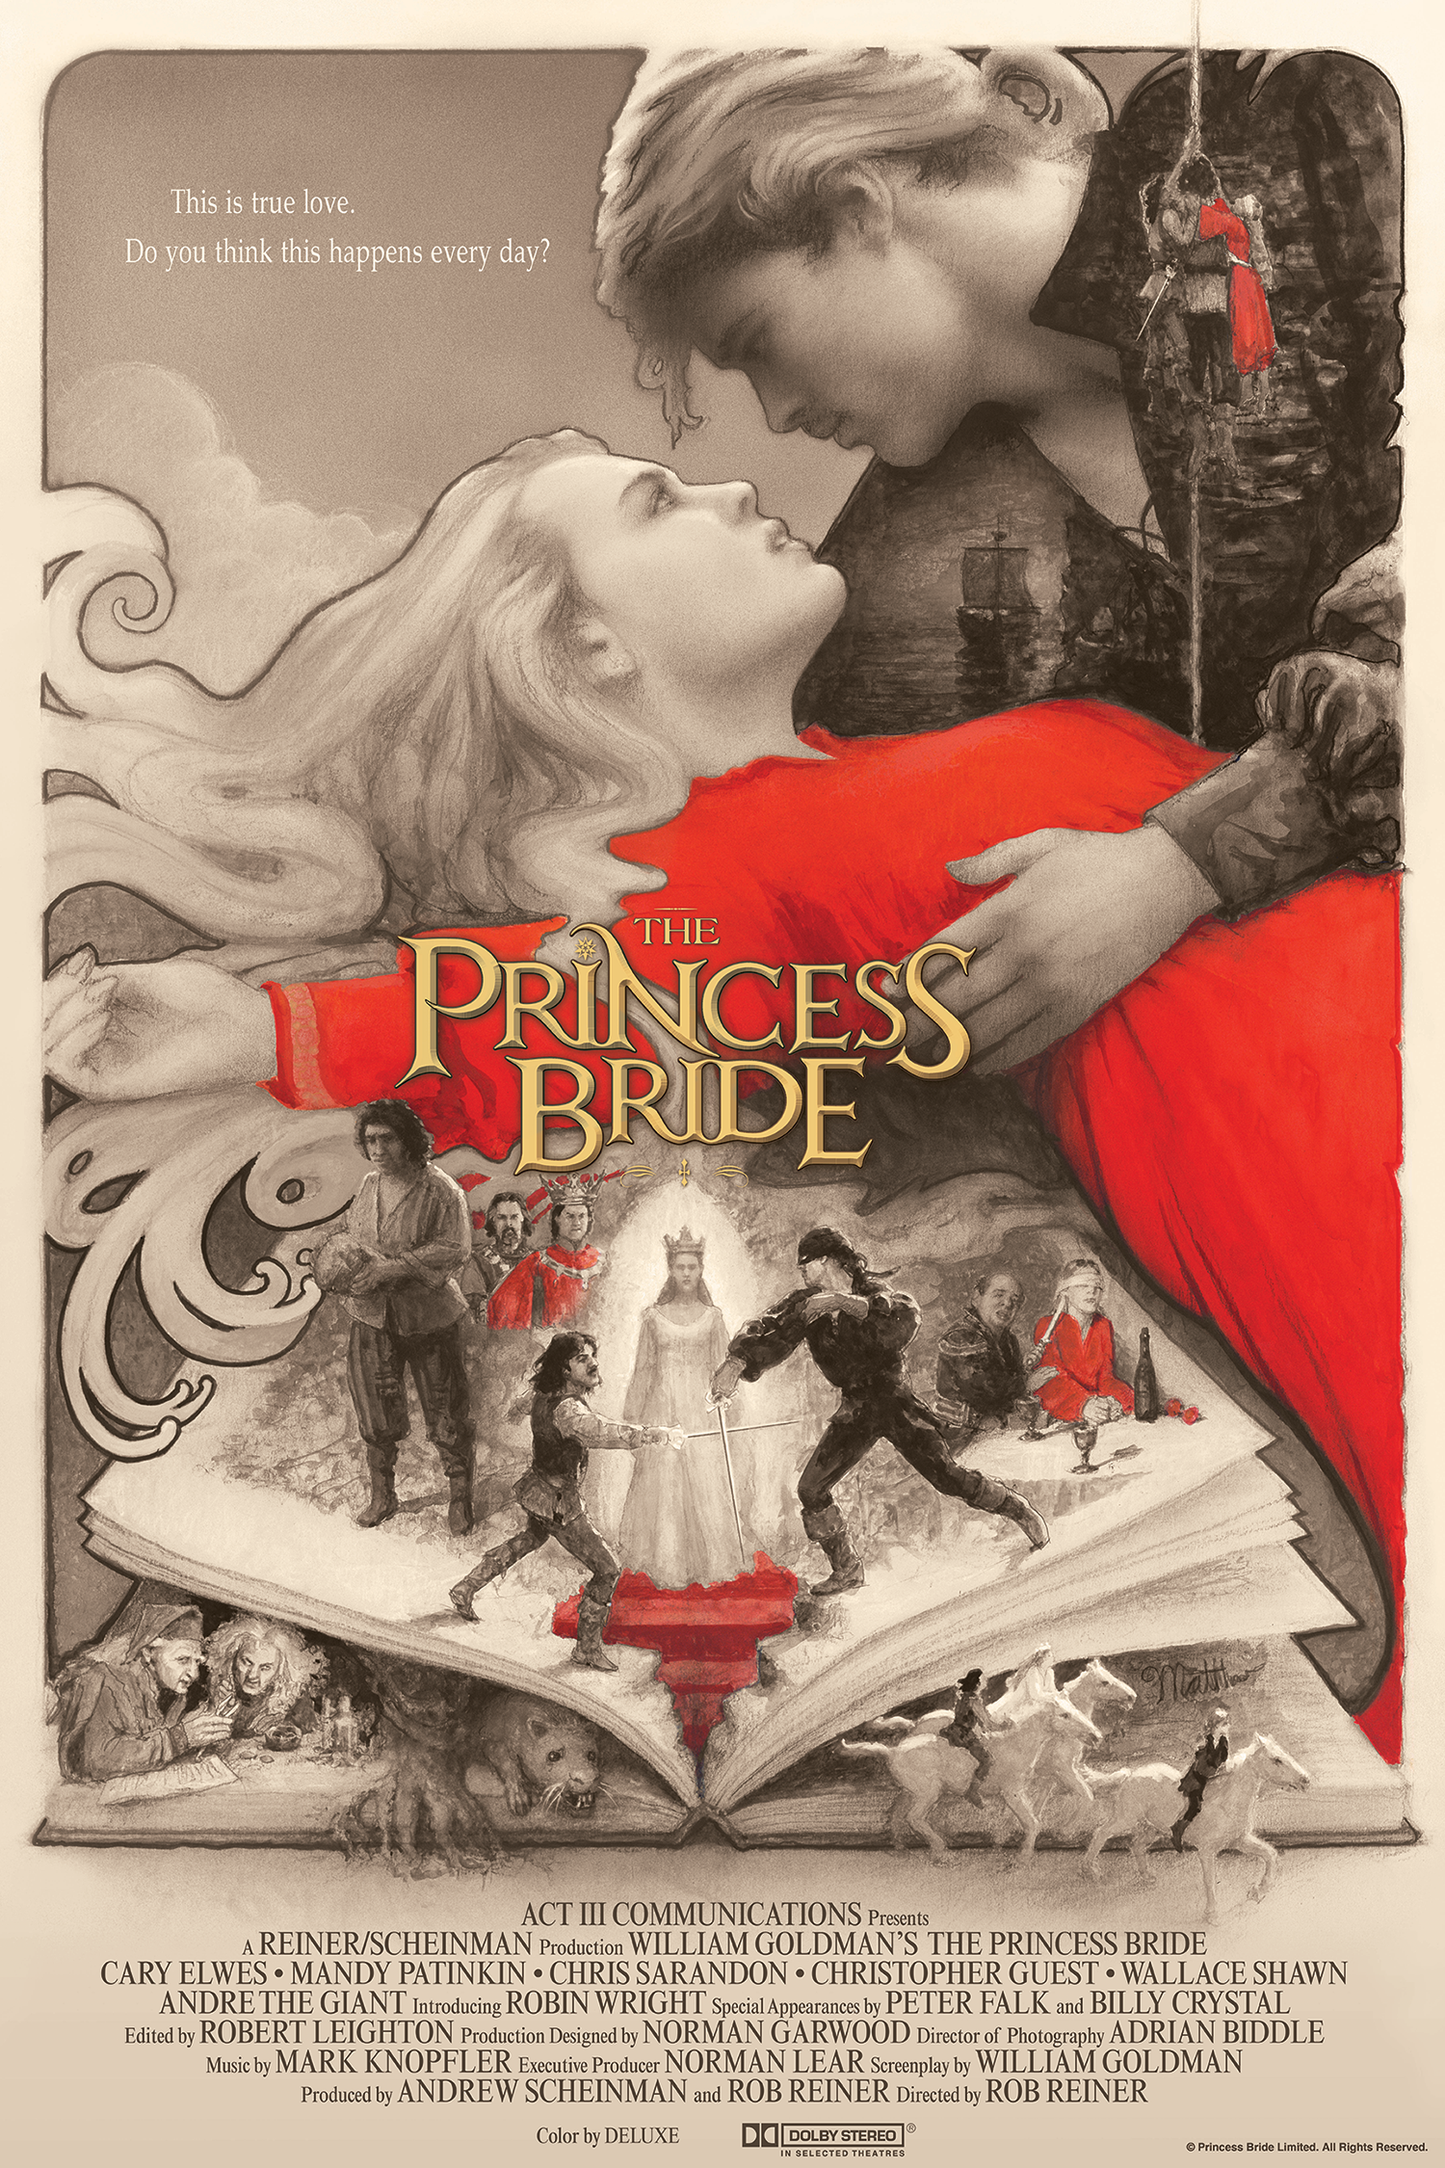 Matthew Peak "The Princess Bride" Variant AP